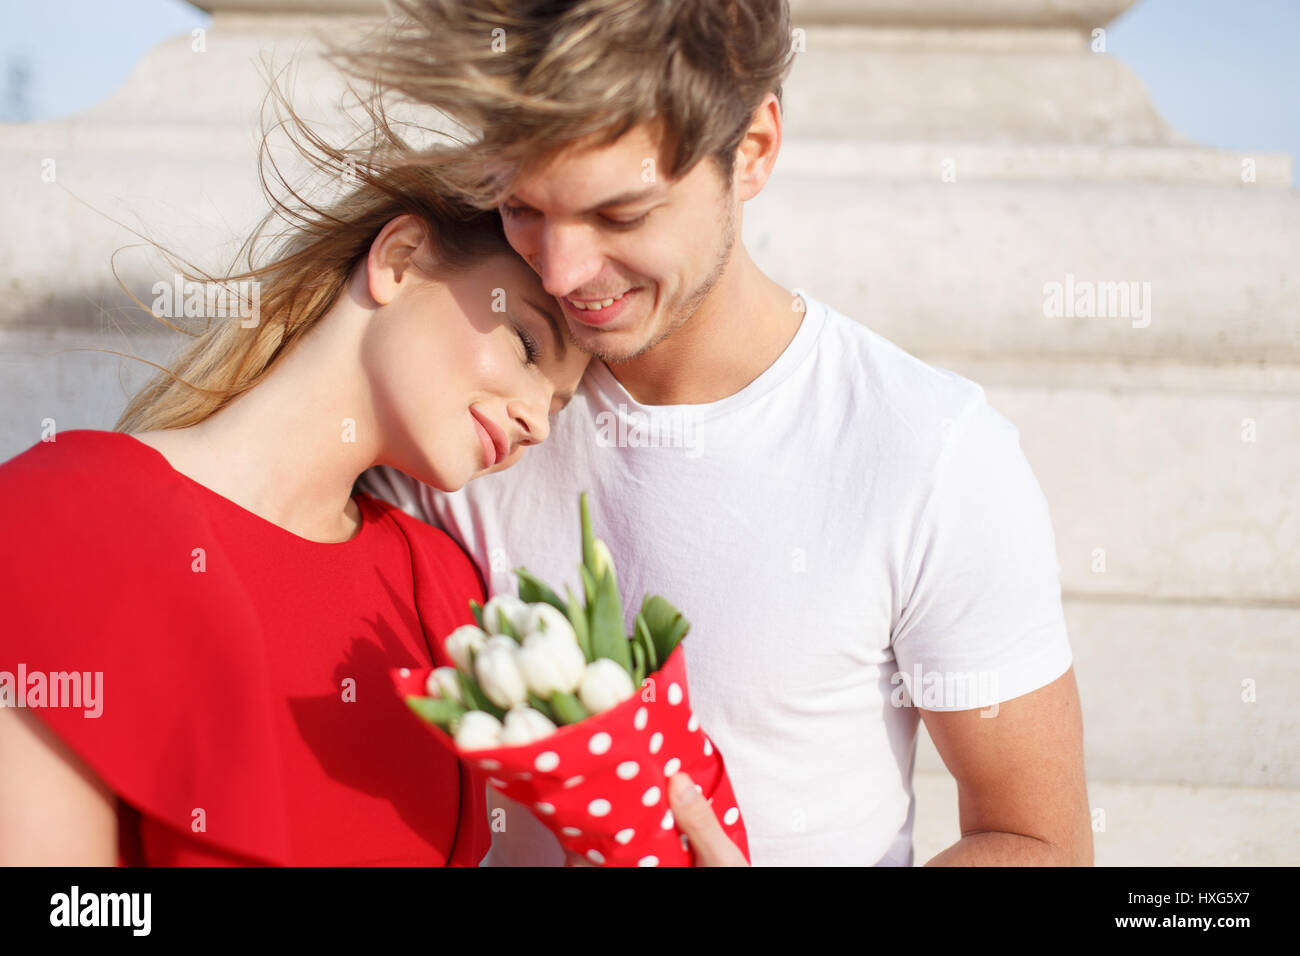 Junge Frau im roten Kleid kuscheln zu Mann, wenn dating, träumen von Liebe Stockfoto